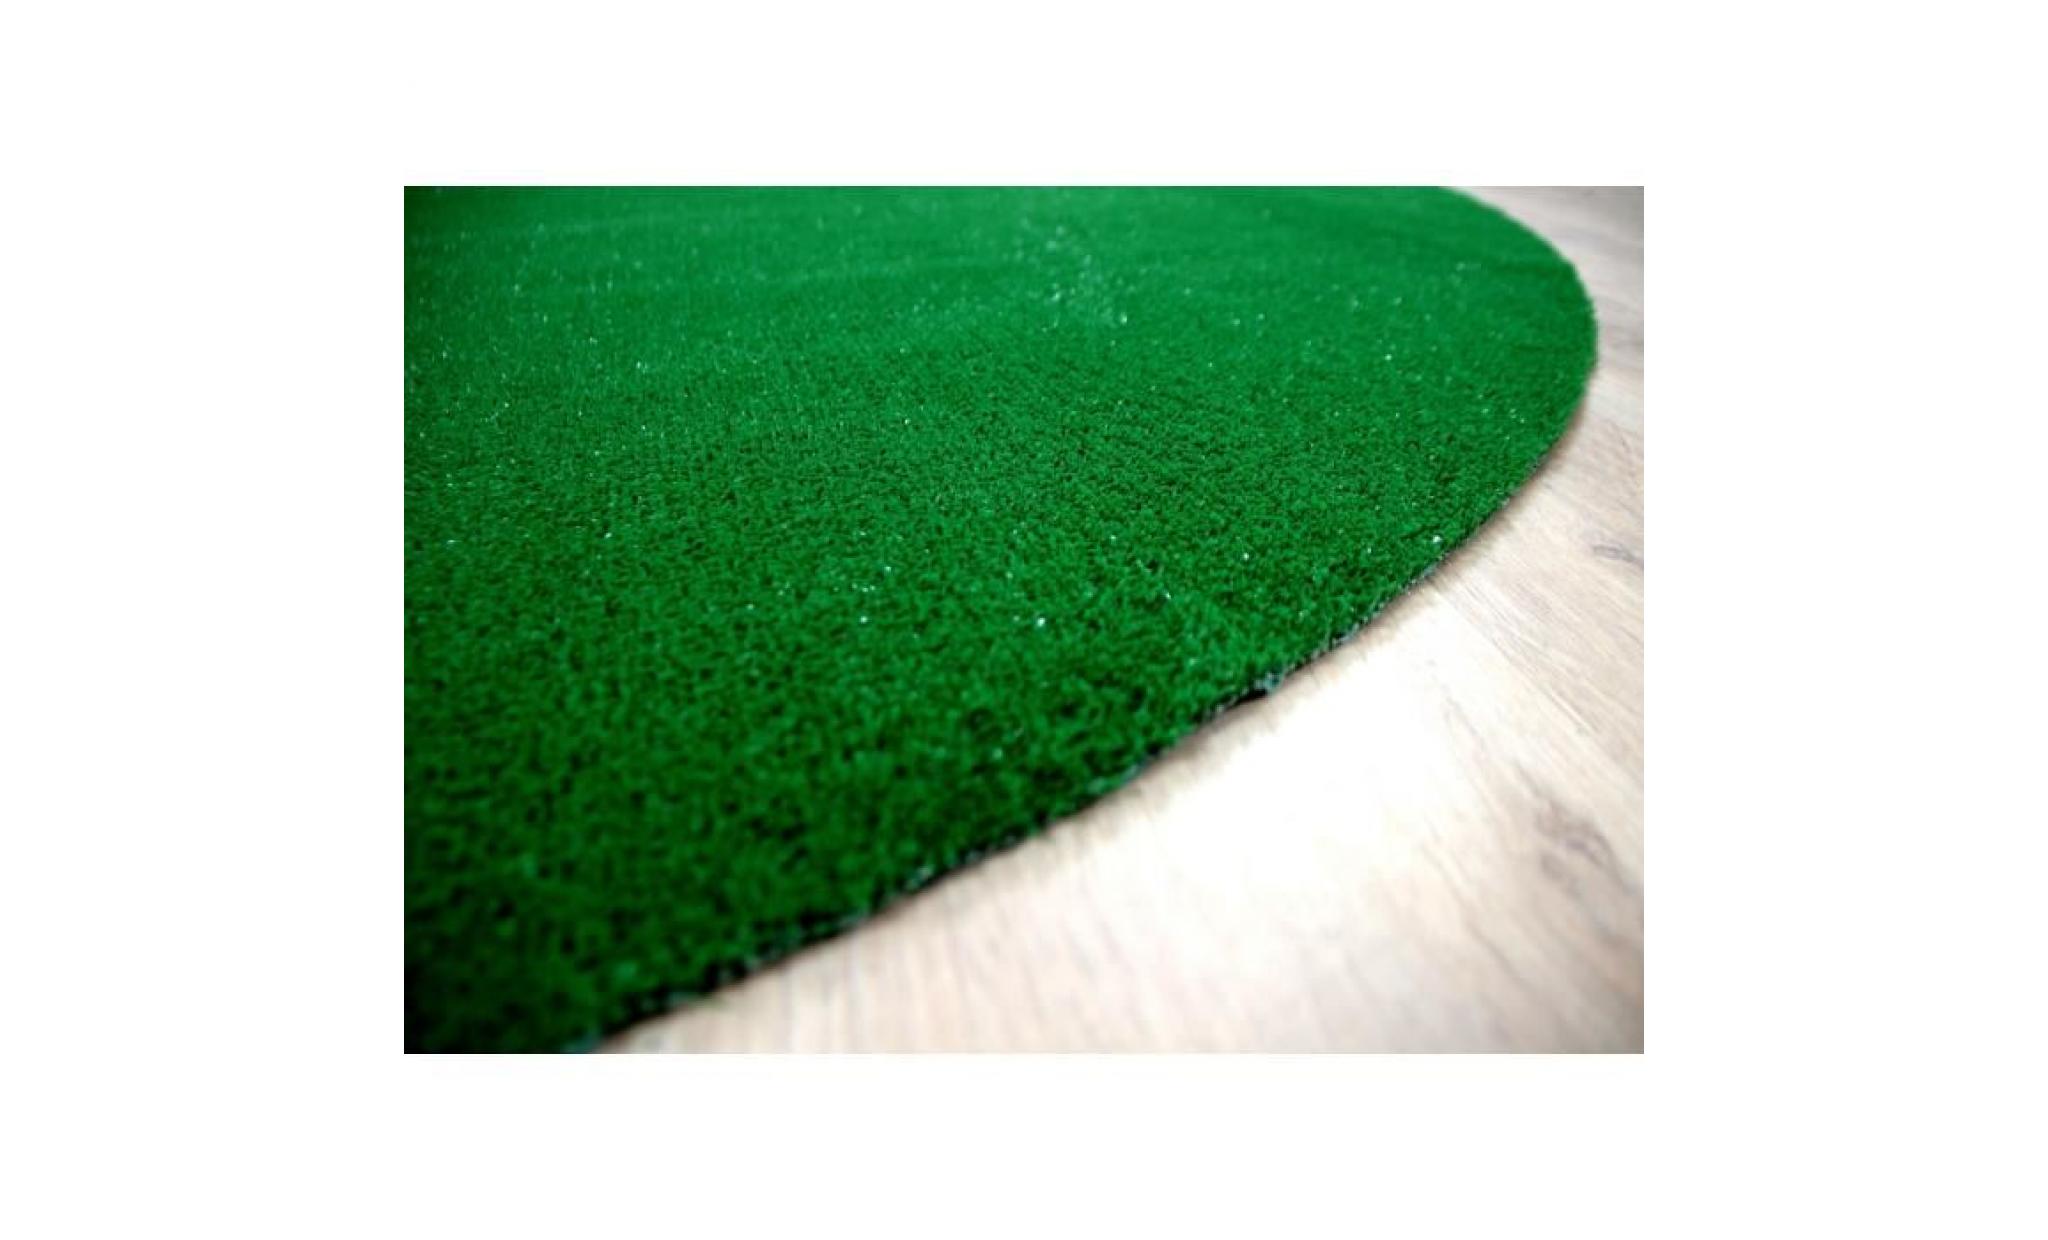 york   tapis type gazon artificiel avec nubs rond – pour jardin, terrasse, balcon   vert   [133 cm rond] pas cher